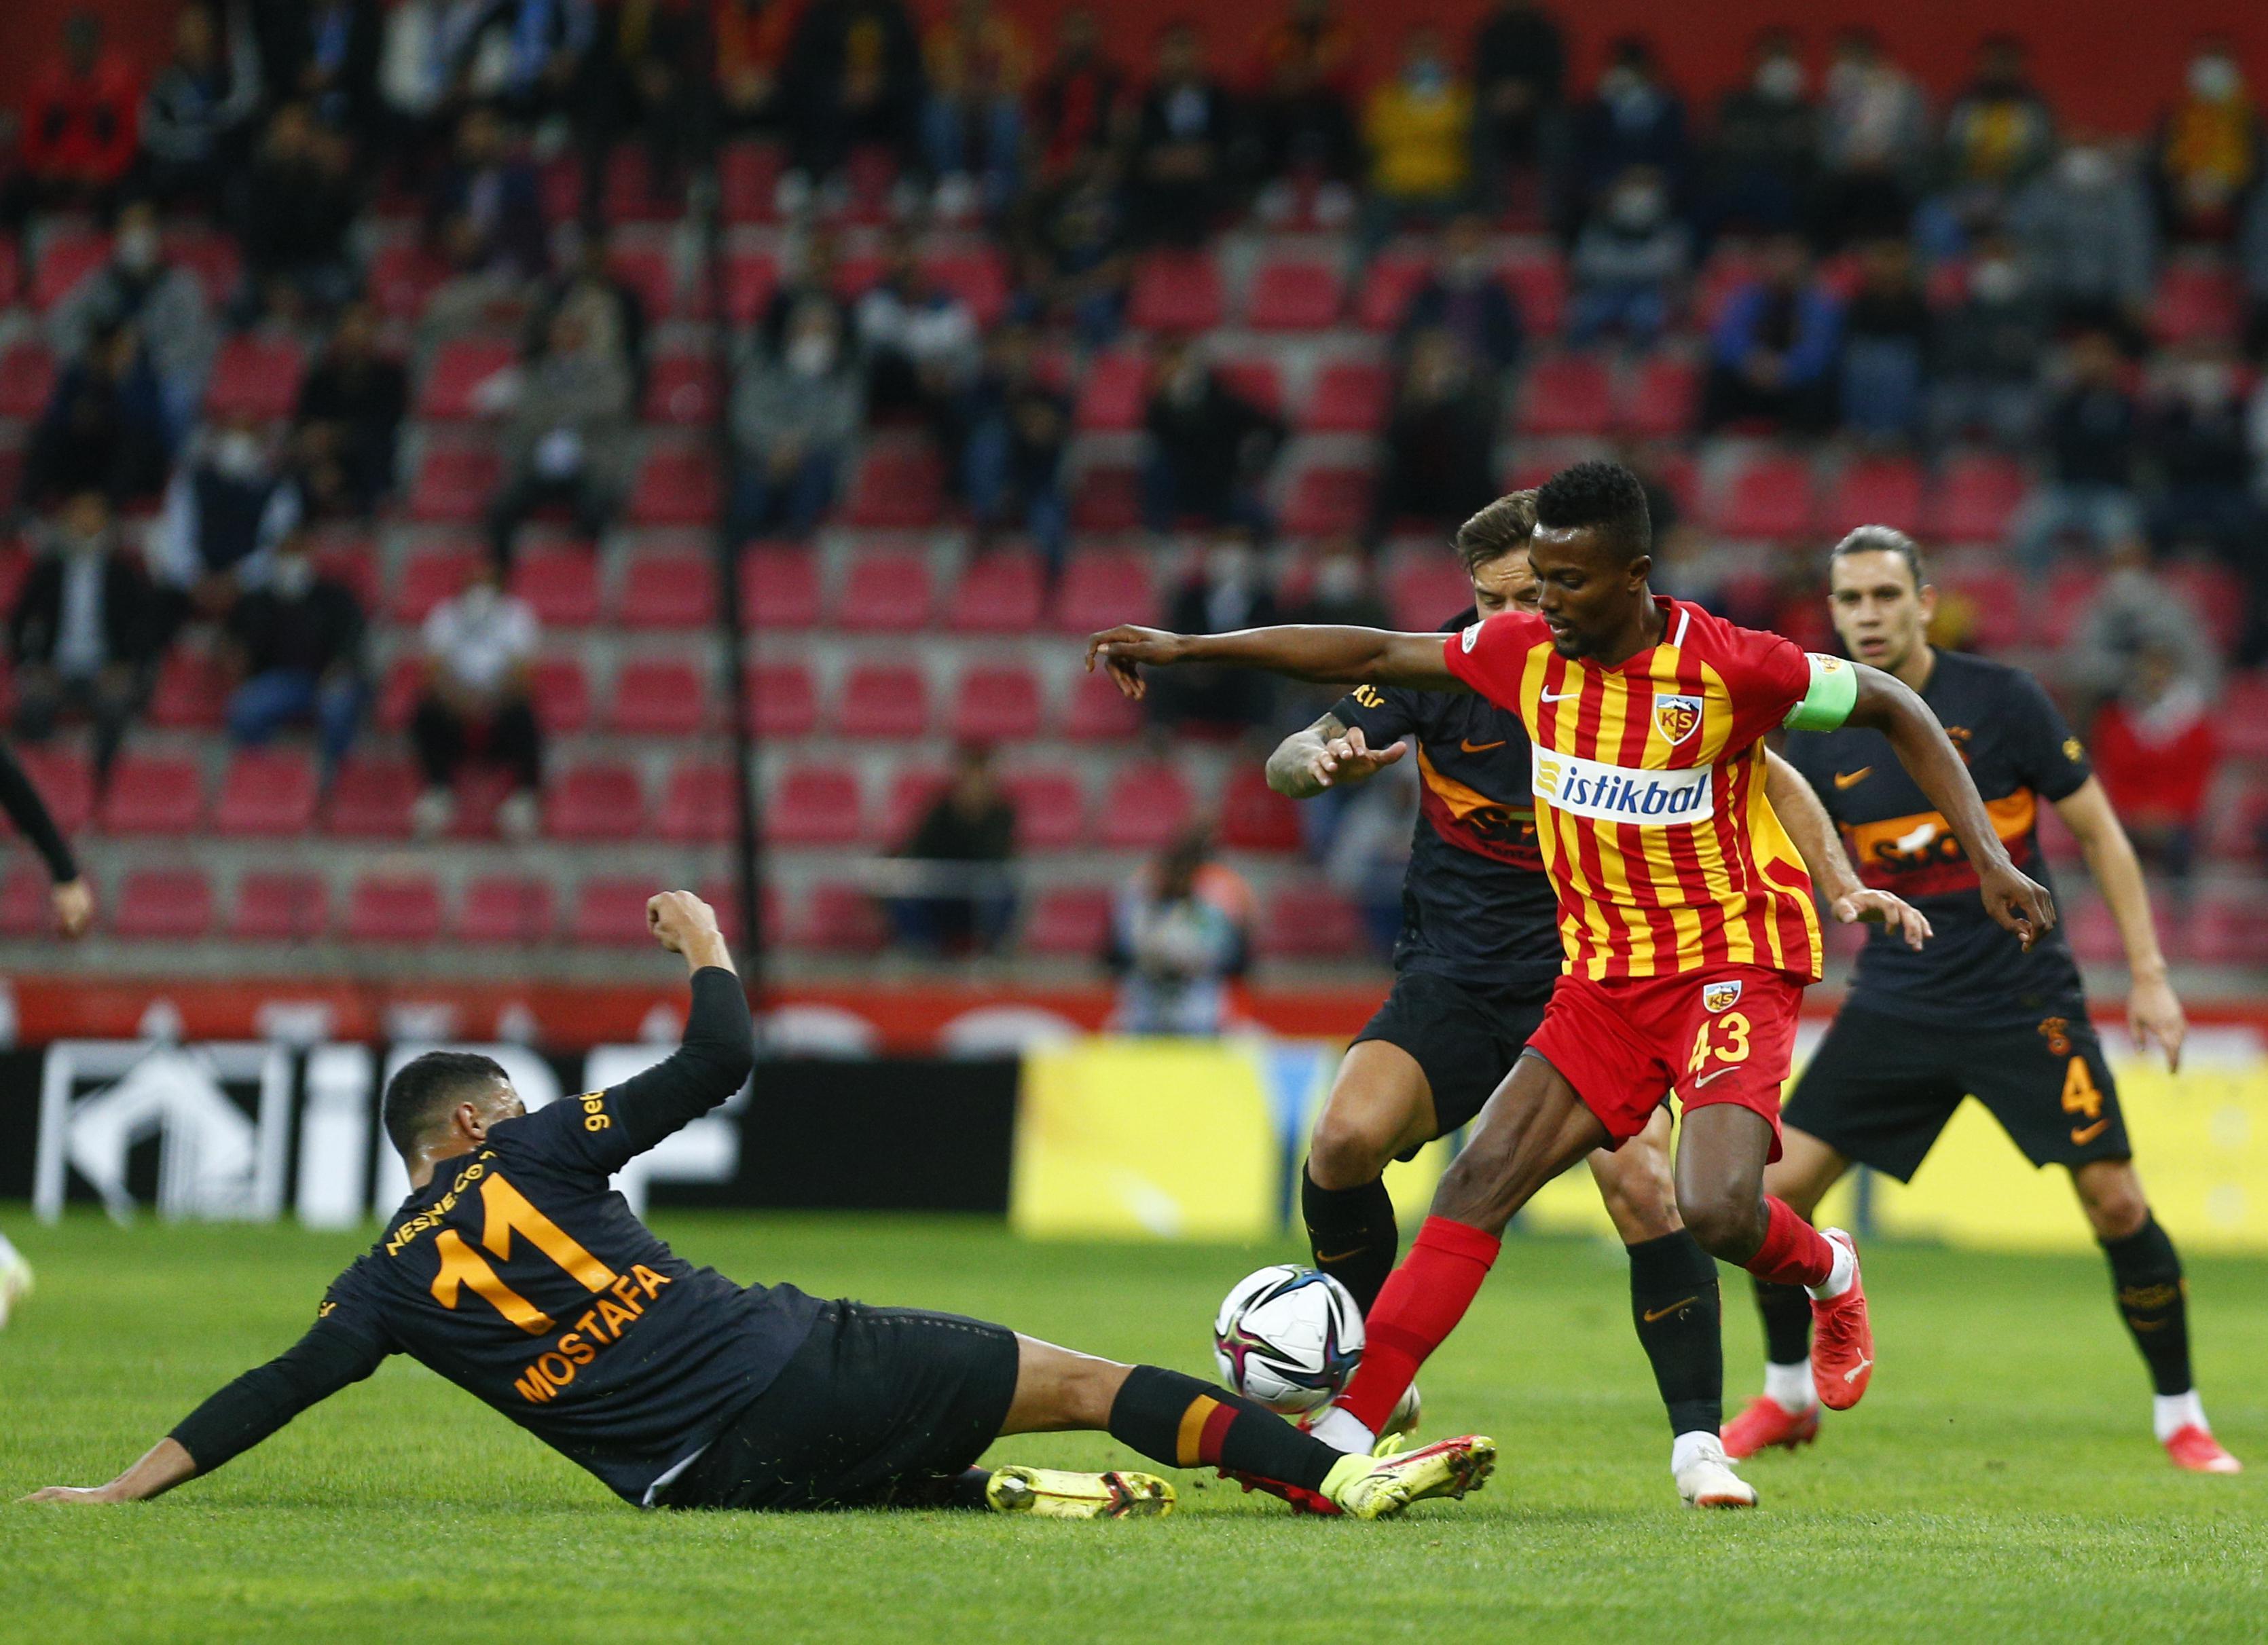 (ÖZET) Kayserispor-Galatasaray maç sonucu: 3-0